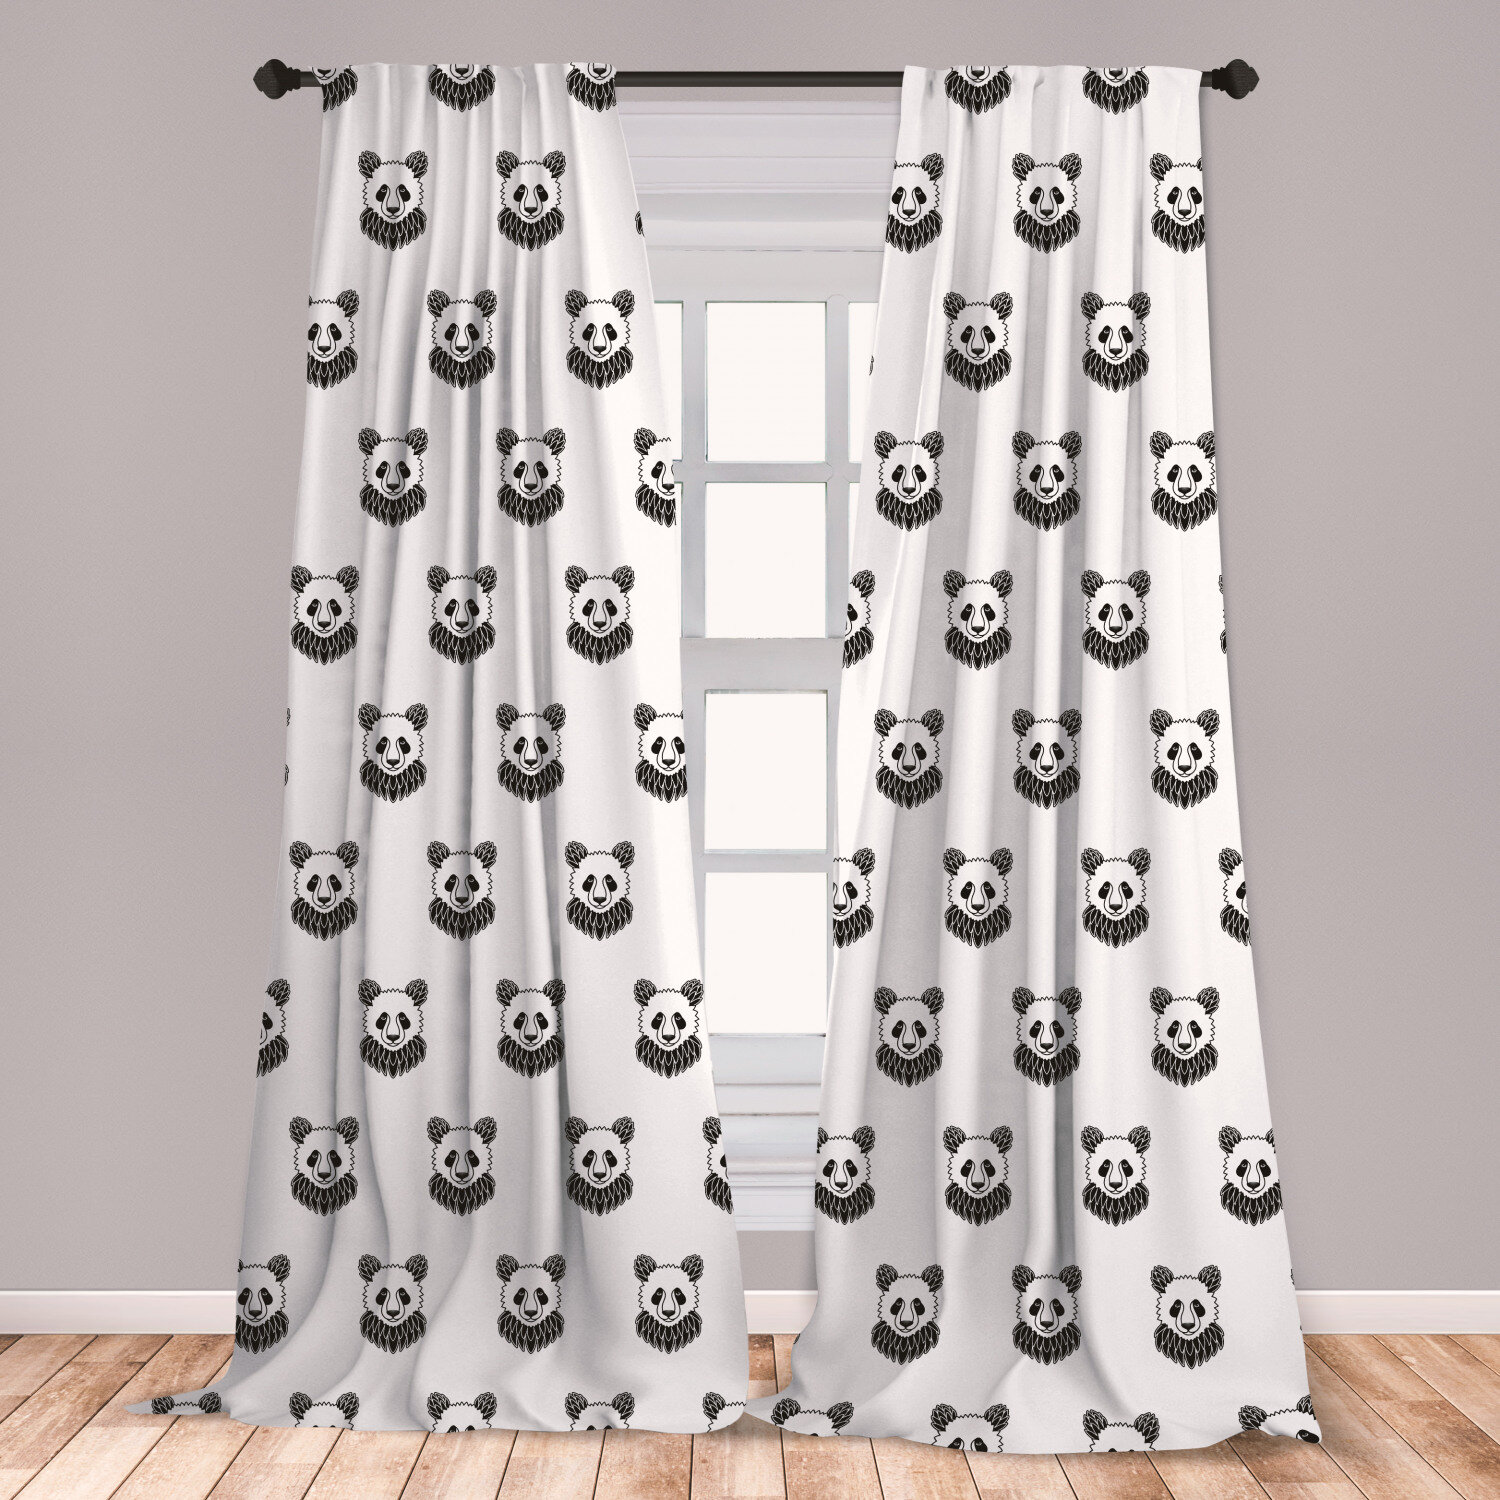 1 Pair Panda Cartoon Plush Toy Window Curtain Tiebacks for Kid Nursery Room 